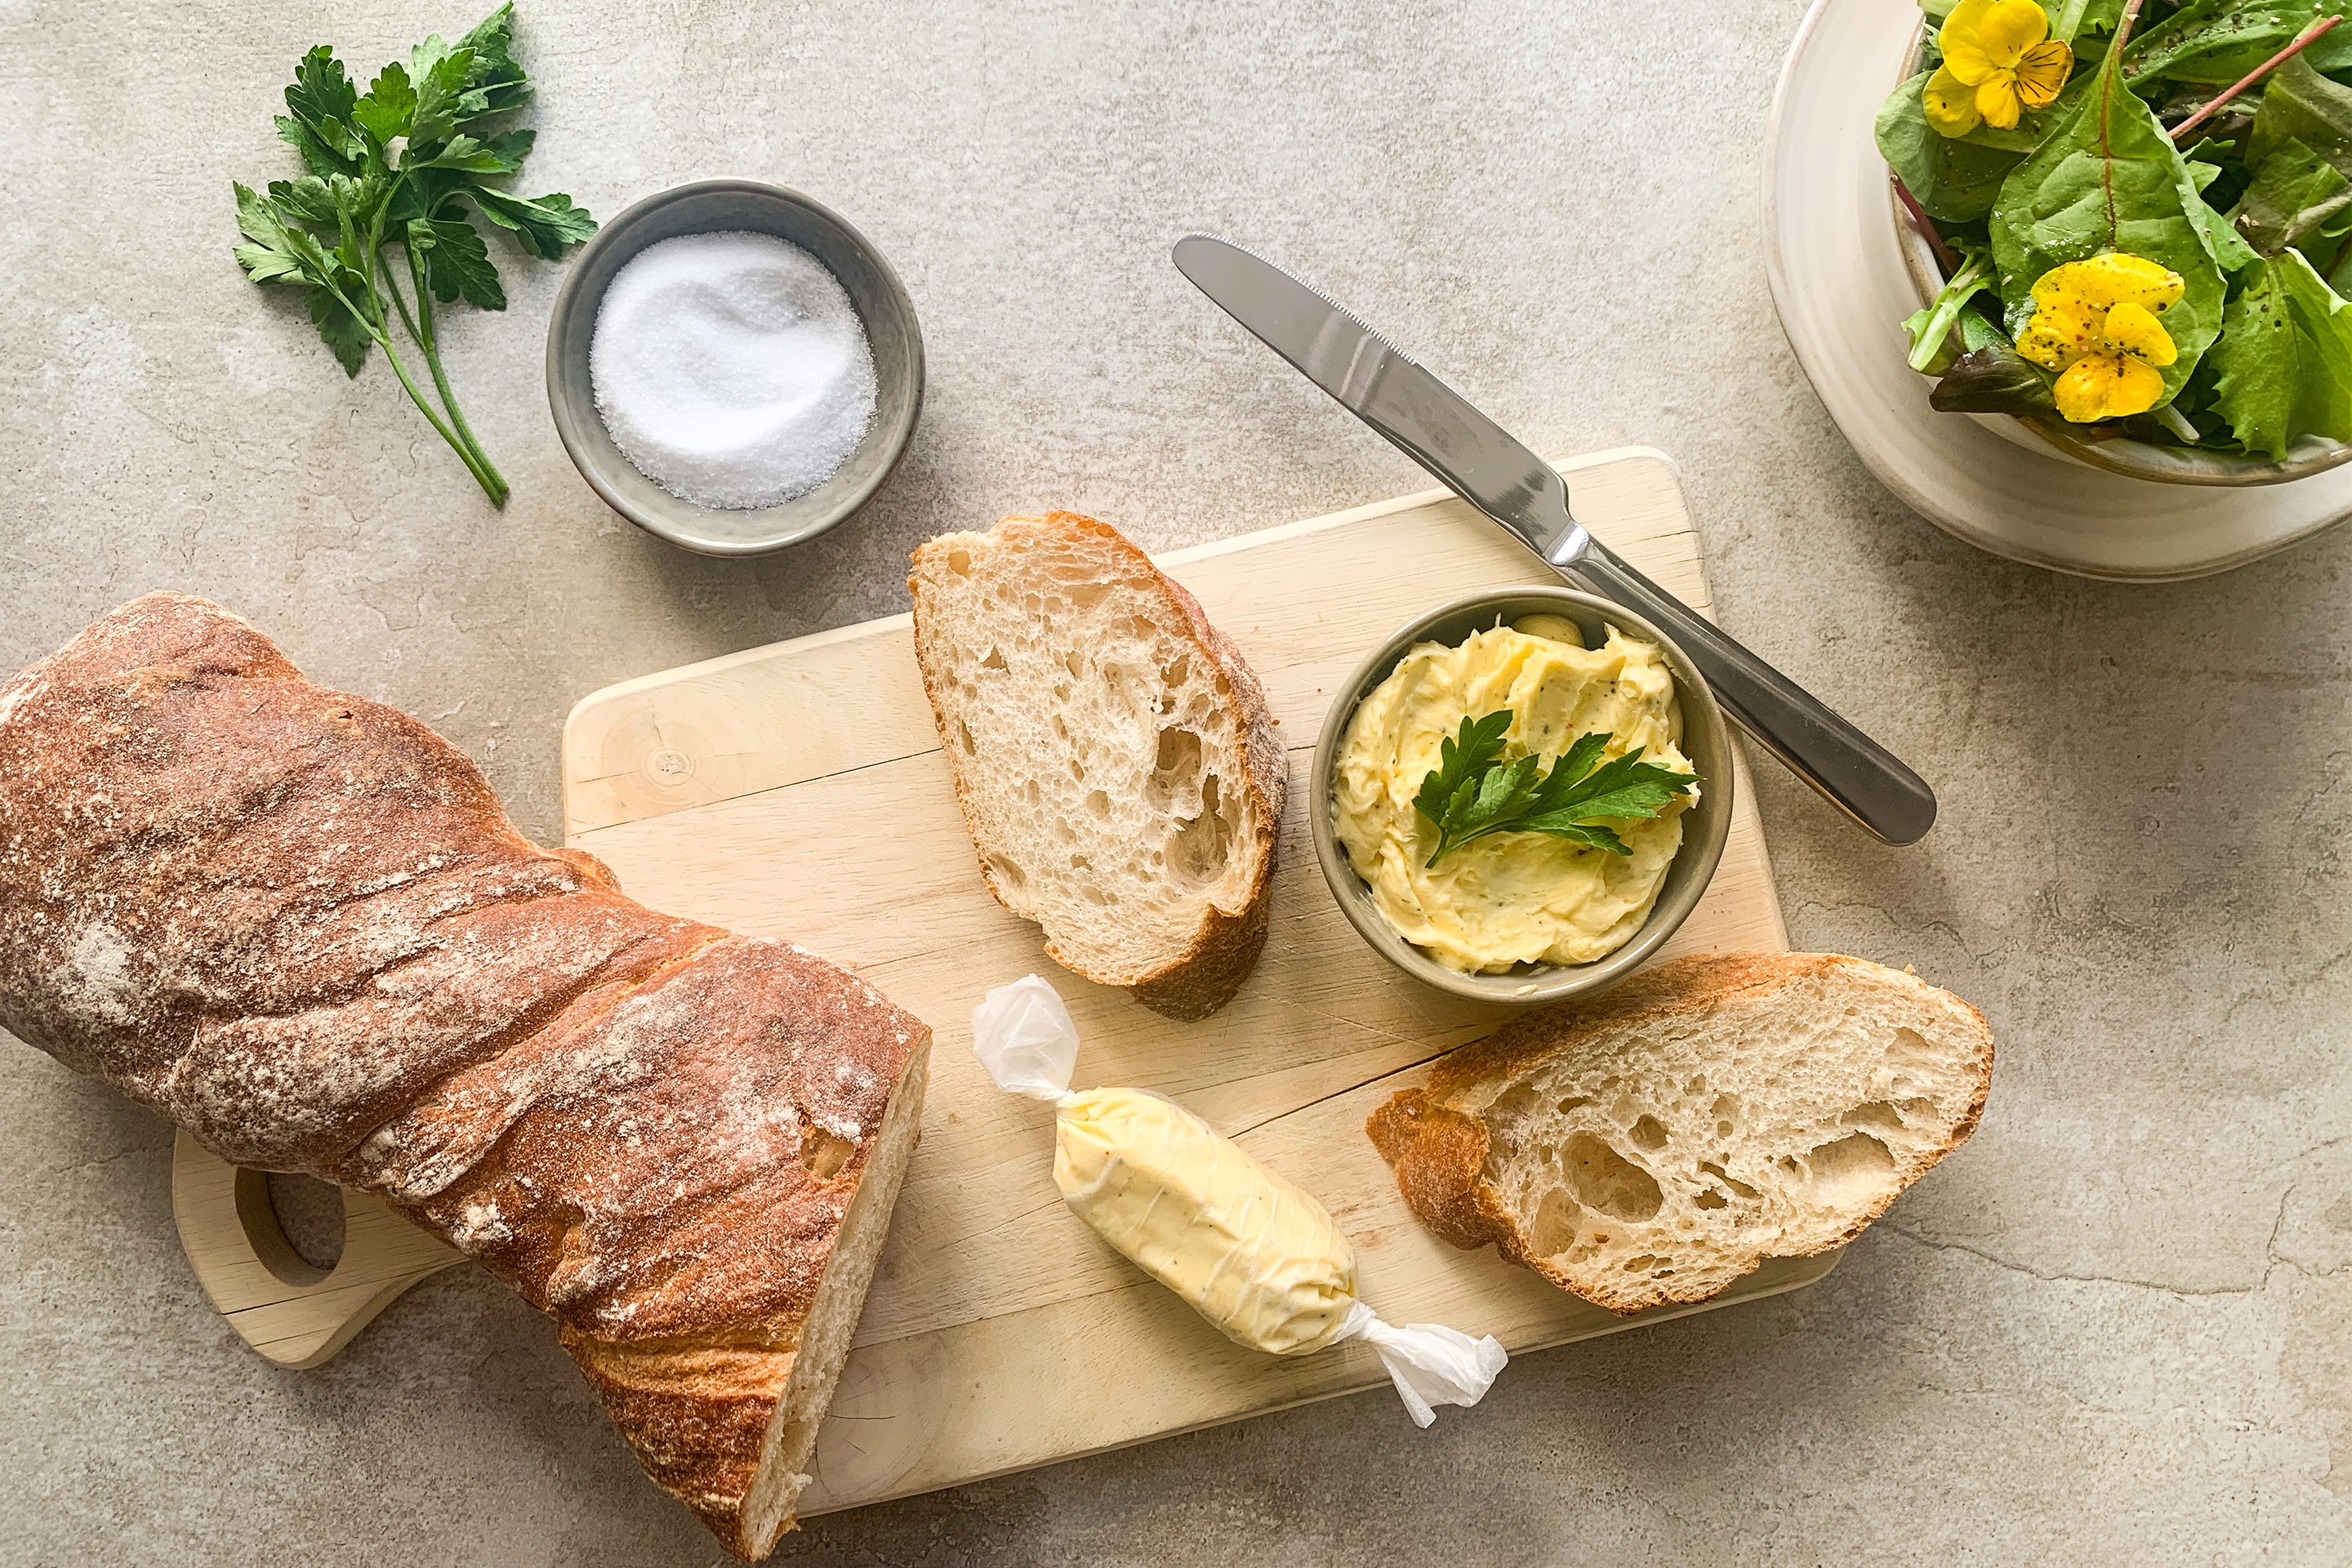 Кочан хляб върху дъска с две филийки и масло в купичка, отстрани - зелена салата.